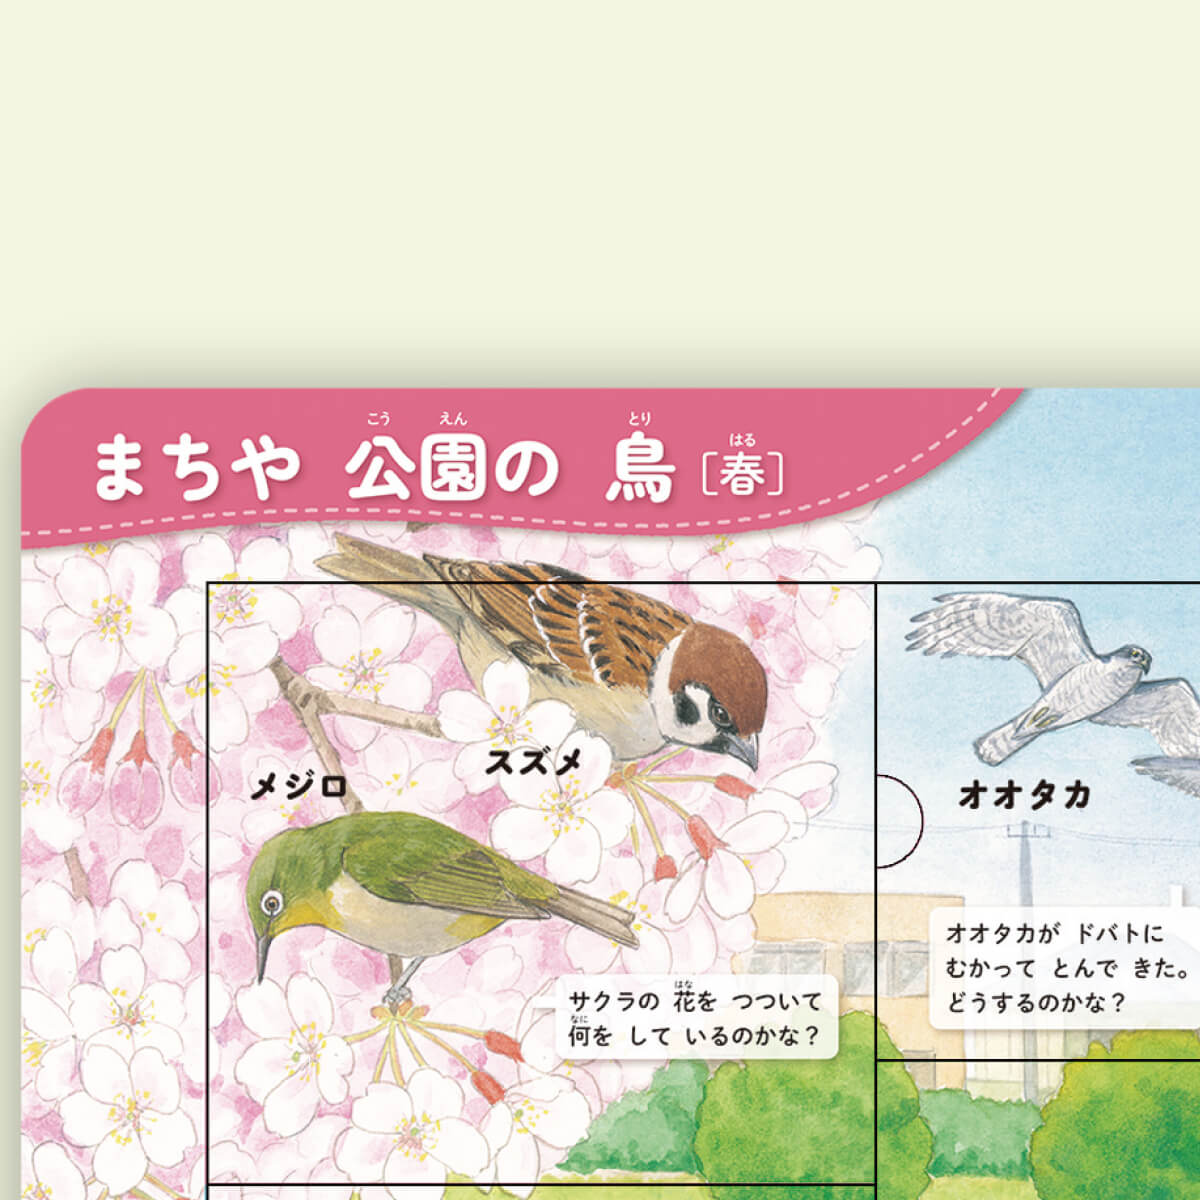 「スズメとメジロが桜の花をつついている？ しかけをめくると」紙面